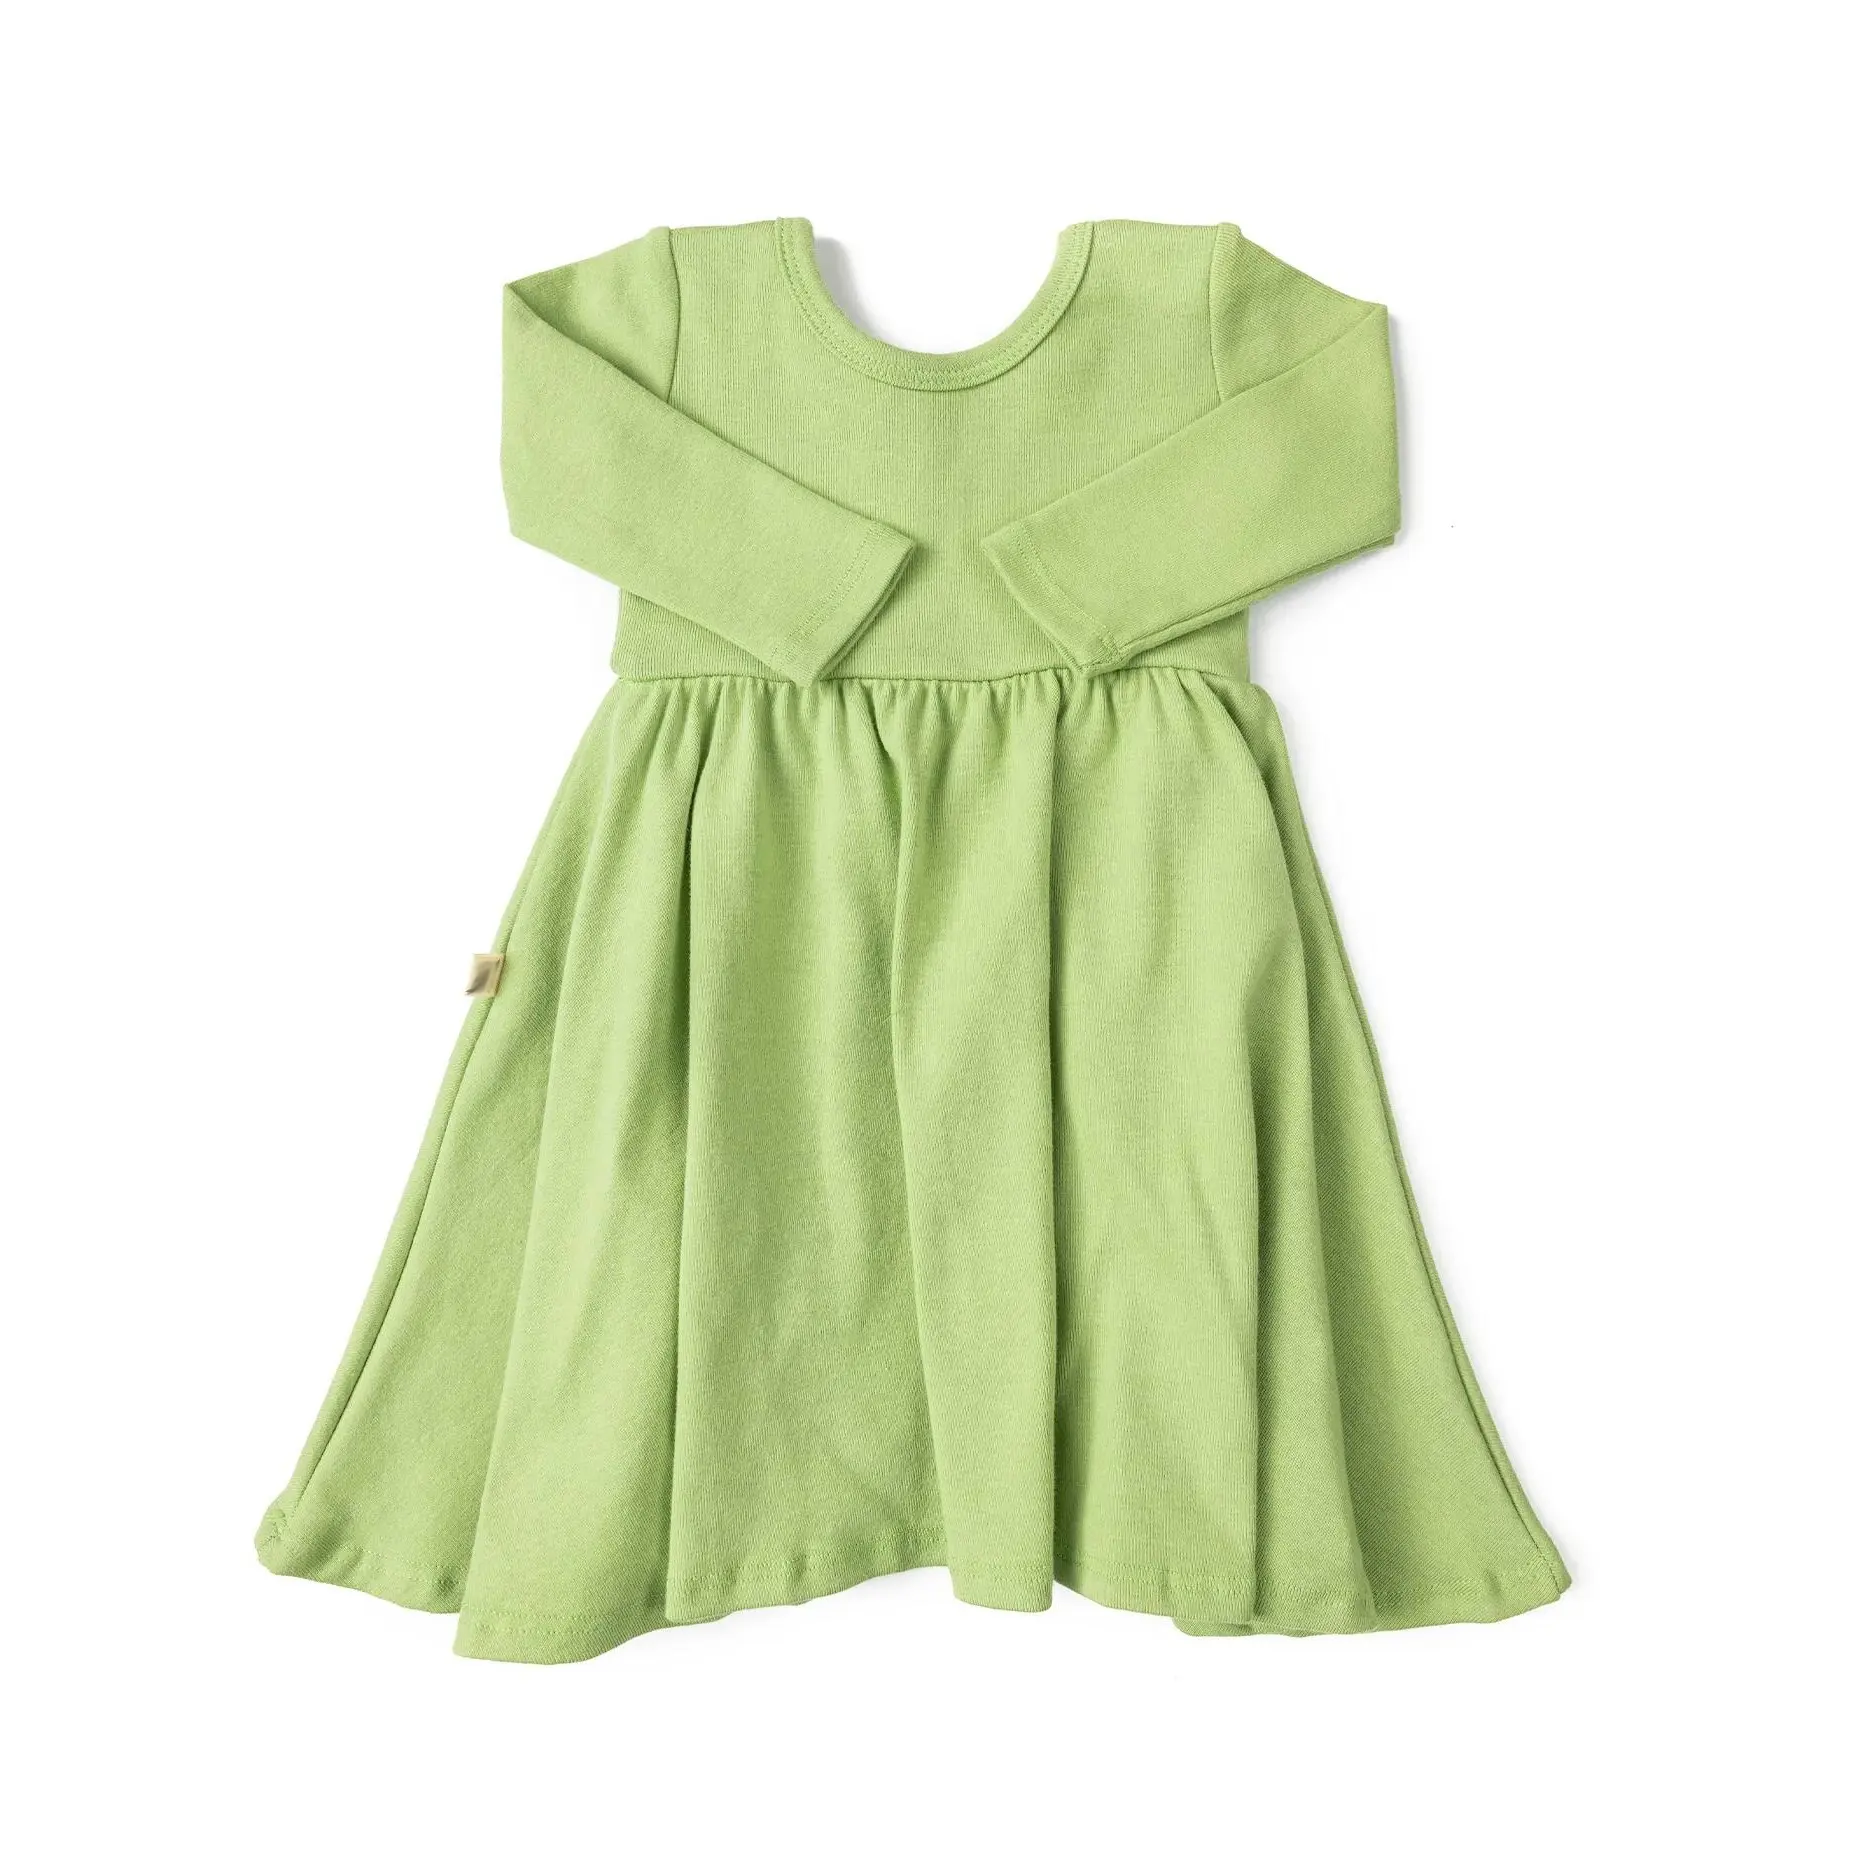 Custom Pattern Support Lovely Green, Orange Long Sleeve Baby Girl Swing Dress